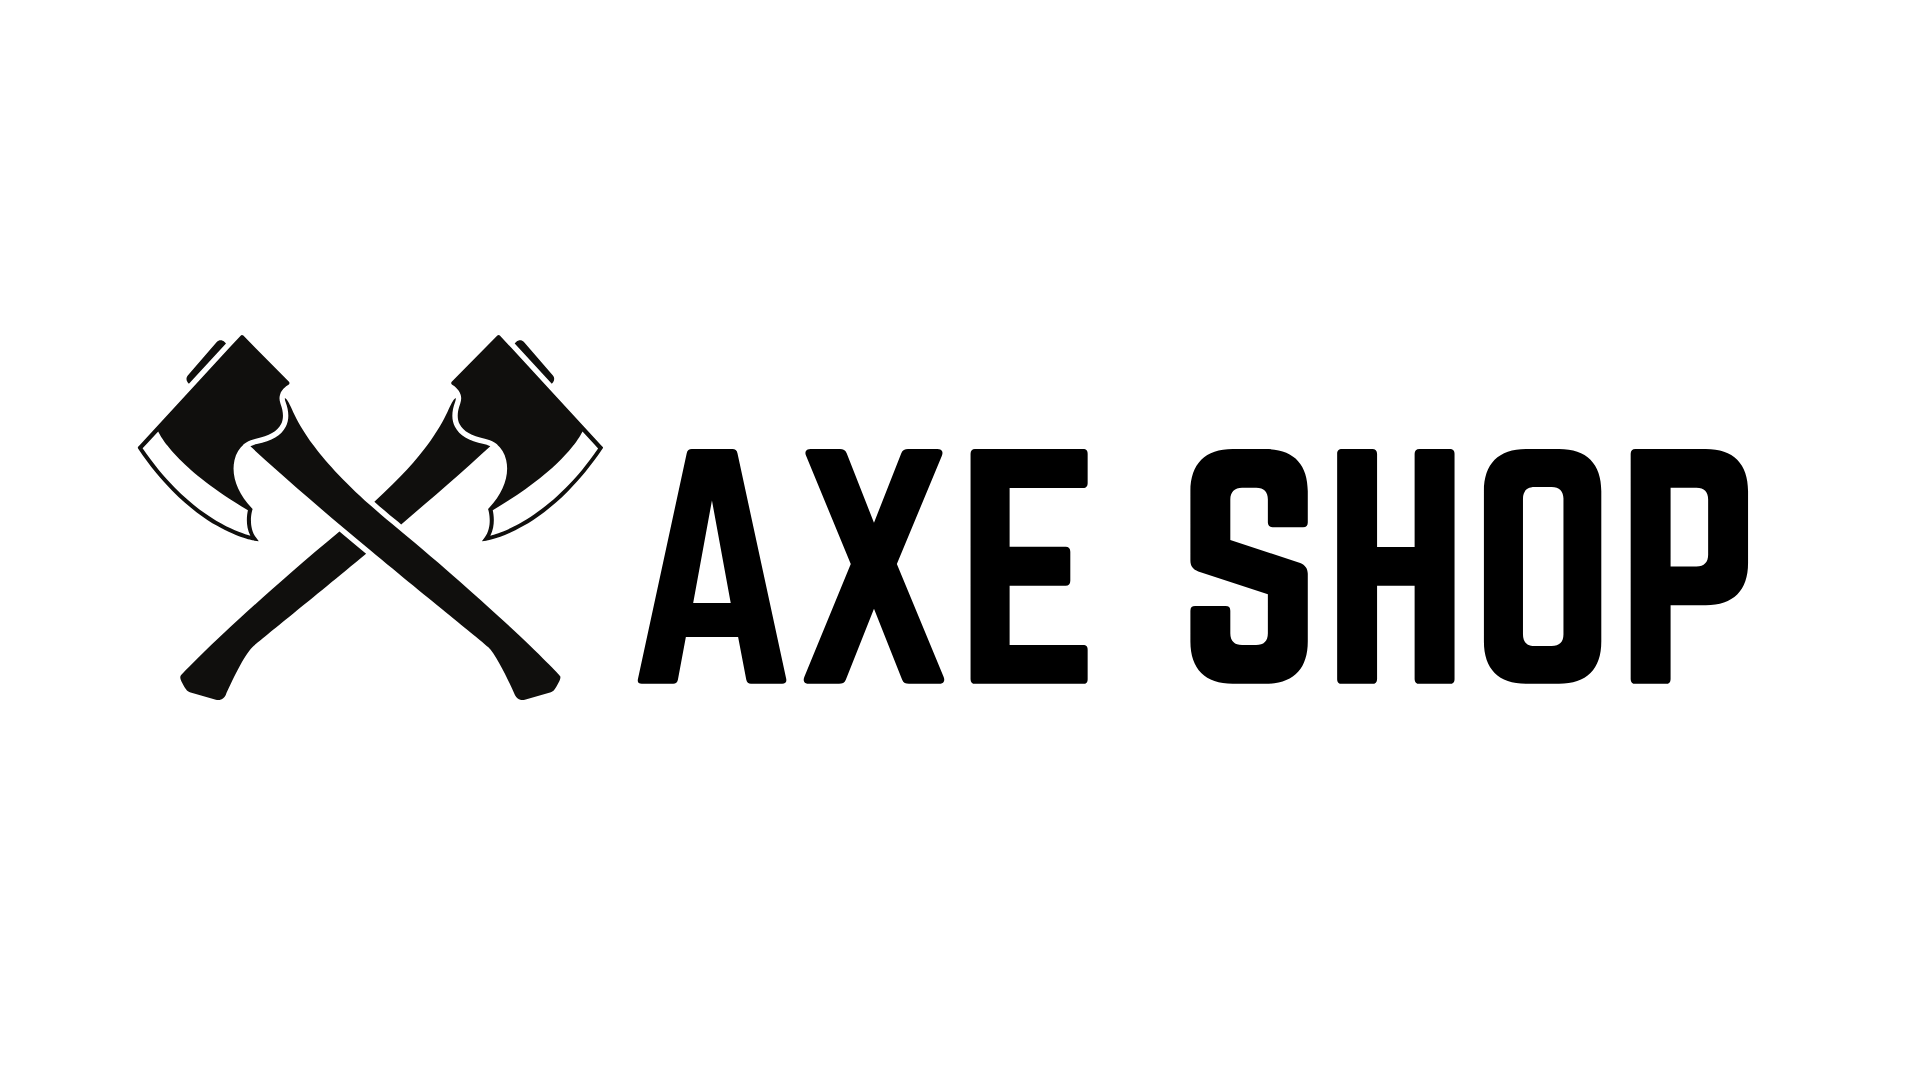 AXE SHOP